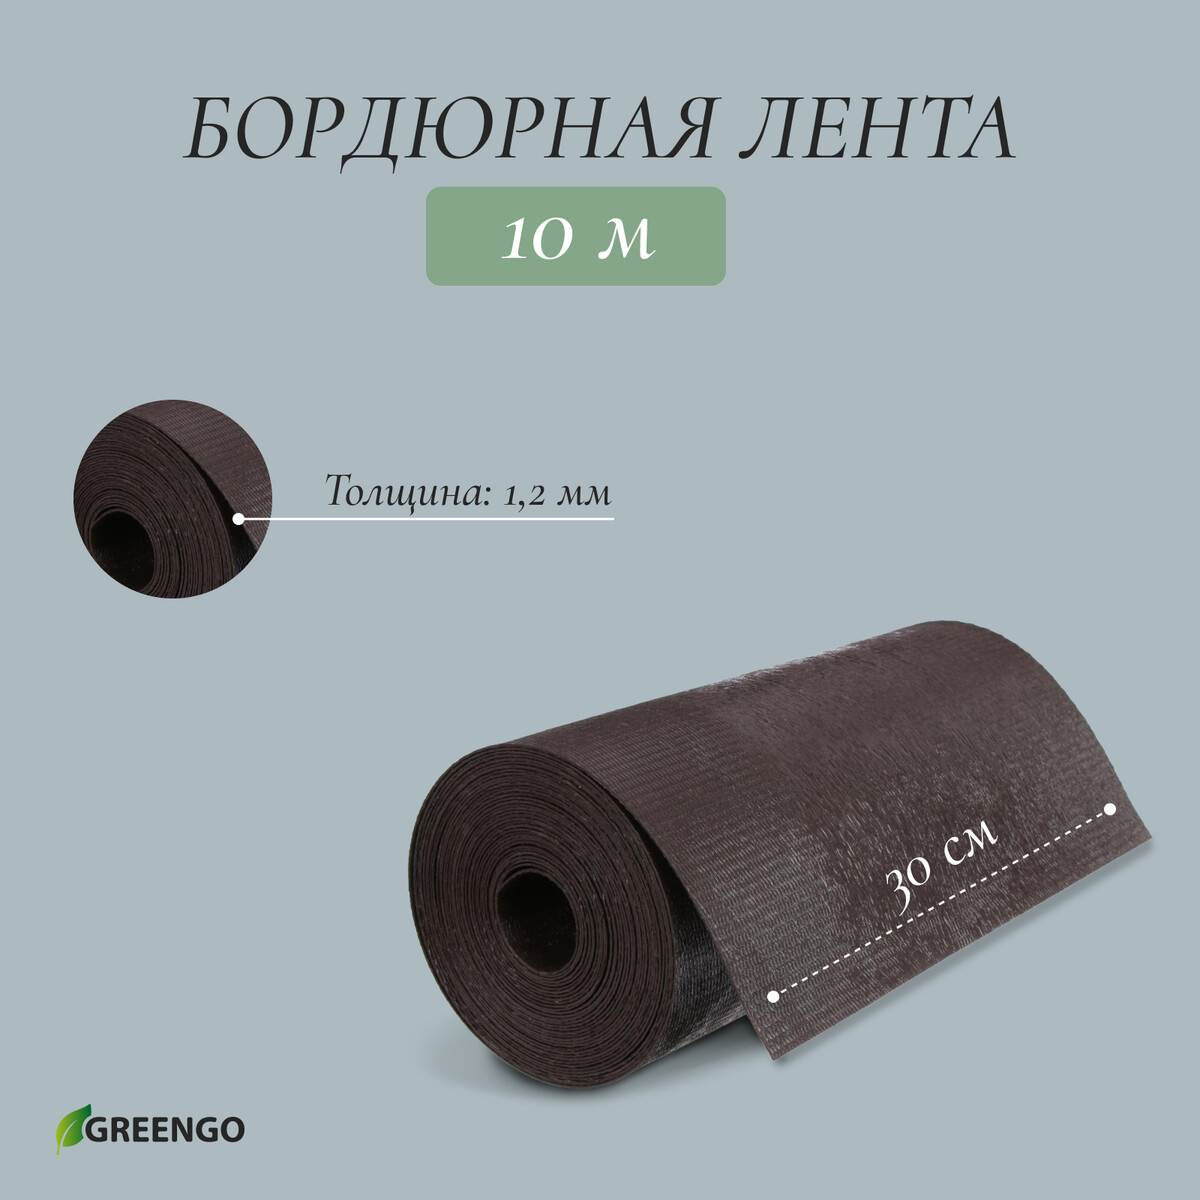 Лента бордюрная, 0.3 × 10 м, толщина 1.2 мм, пластиковая, коричневая, greengo лента бордюрная 0 2 × 9 м толщина 1 2 мм пластиковая фигурная коричневая